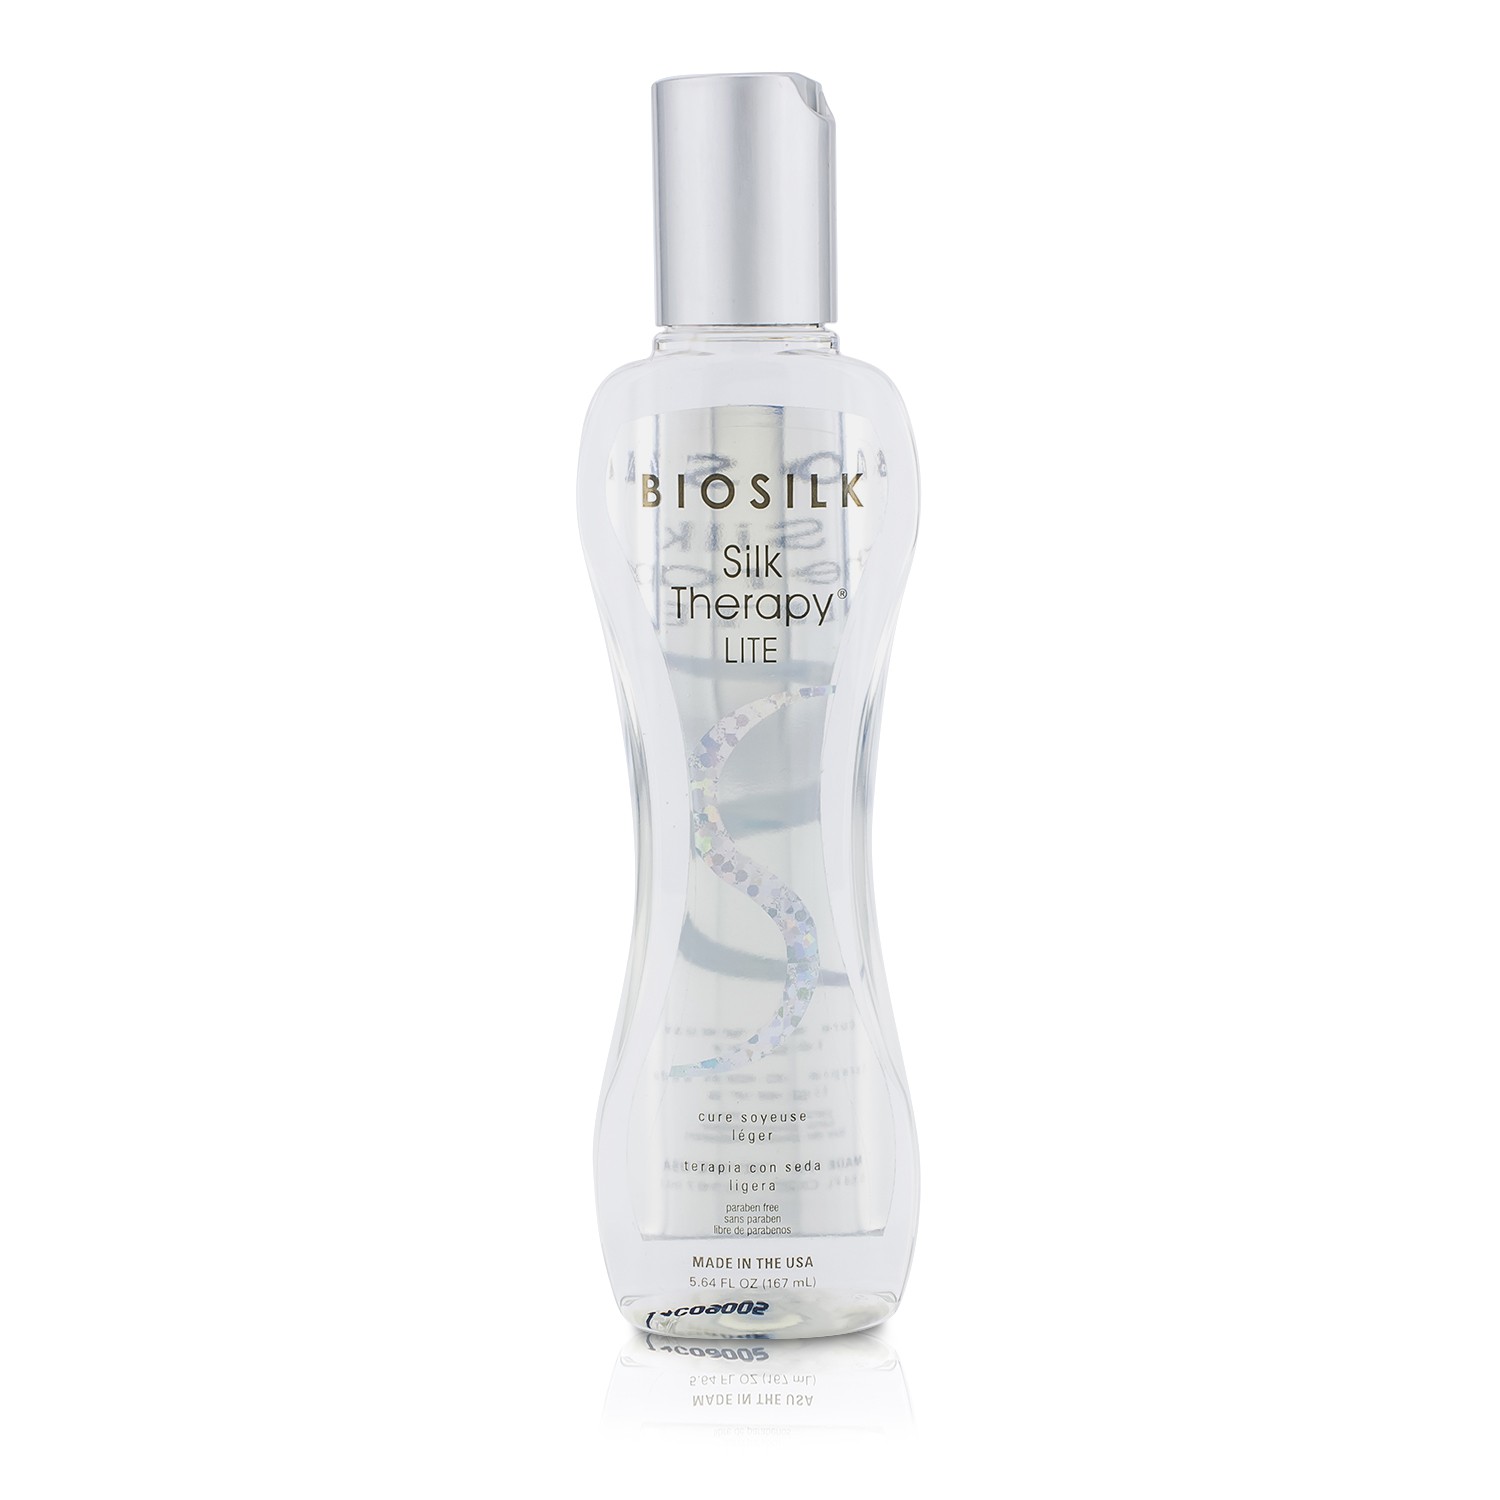 絲洛比 BioSilk - 蠶絲蛋白護髮免洗噴霧 Silk Therapy Lite